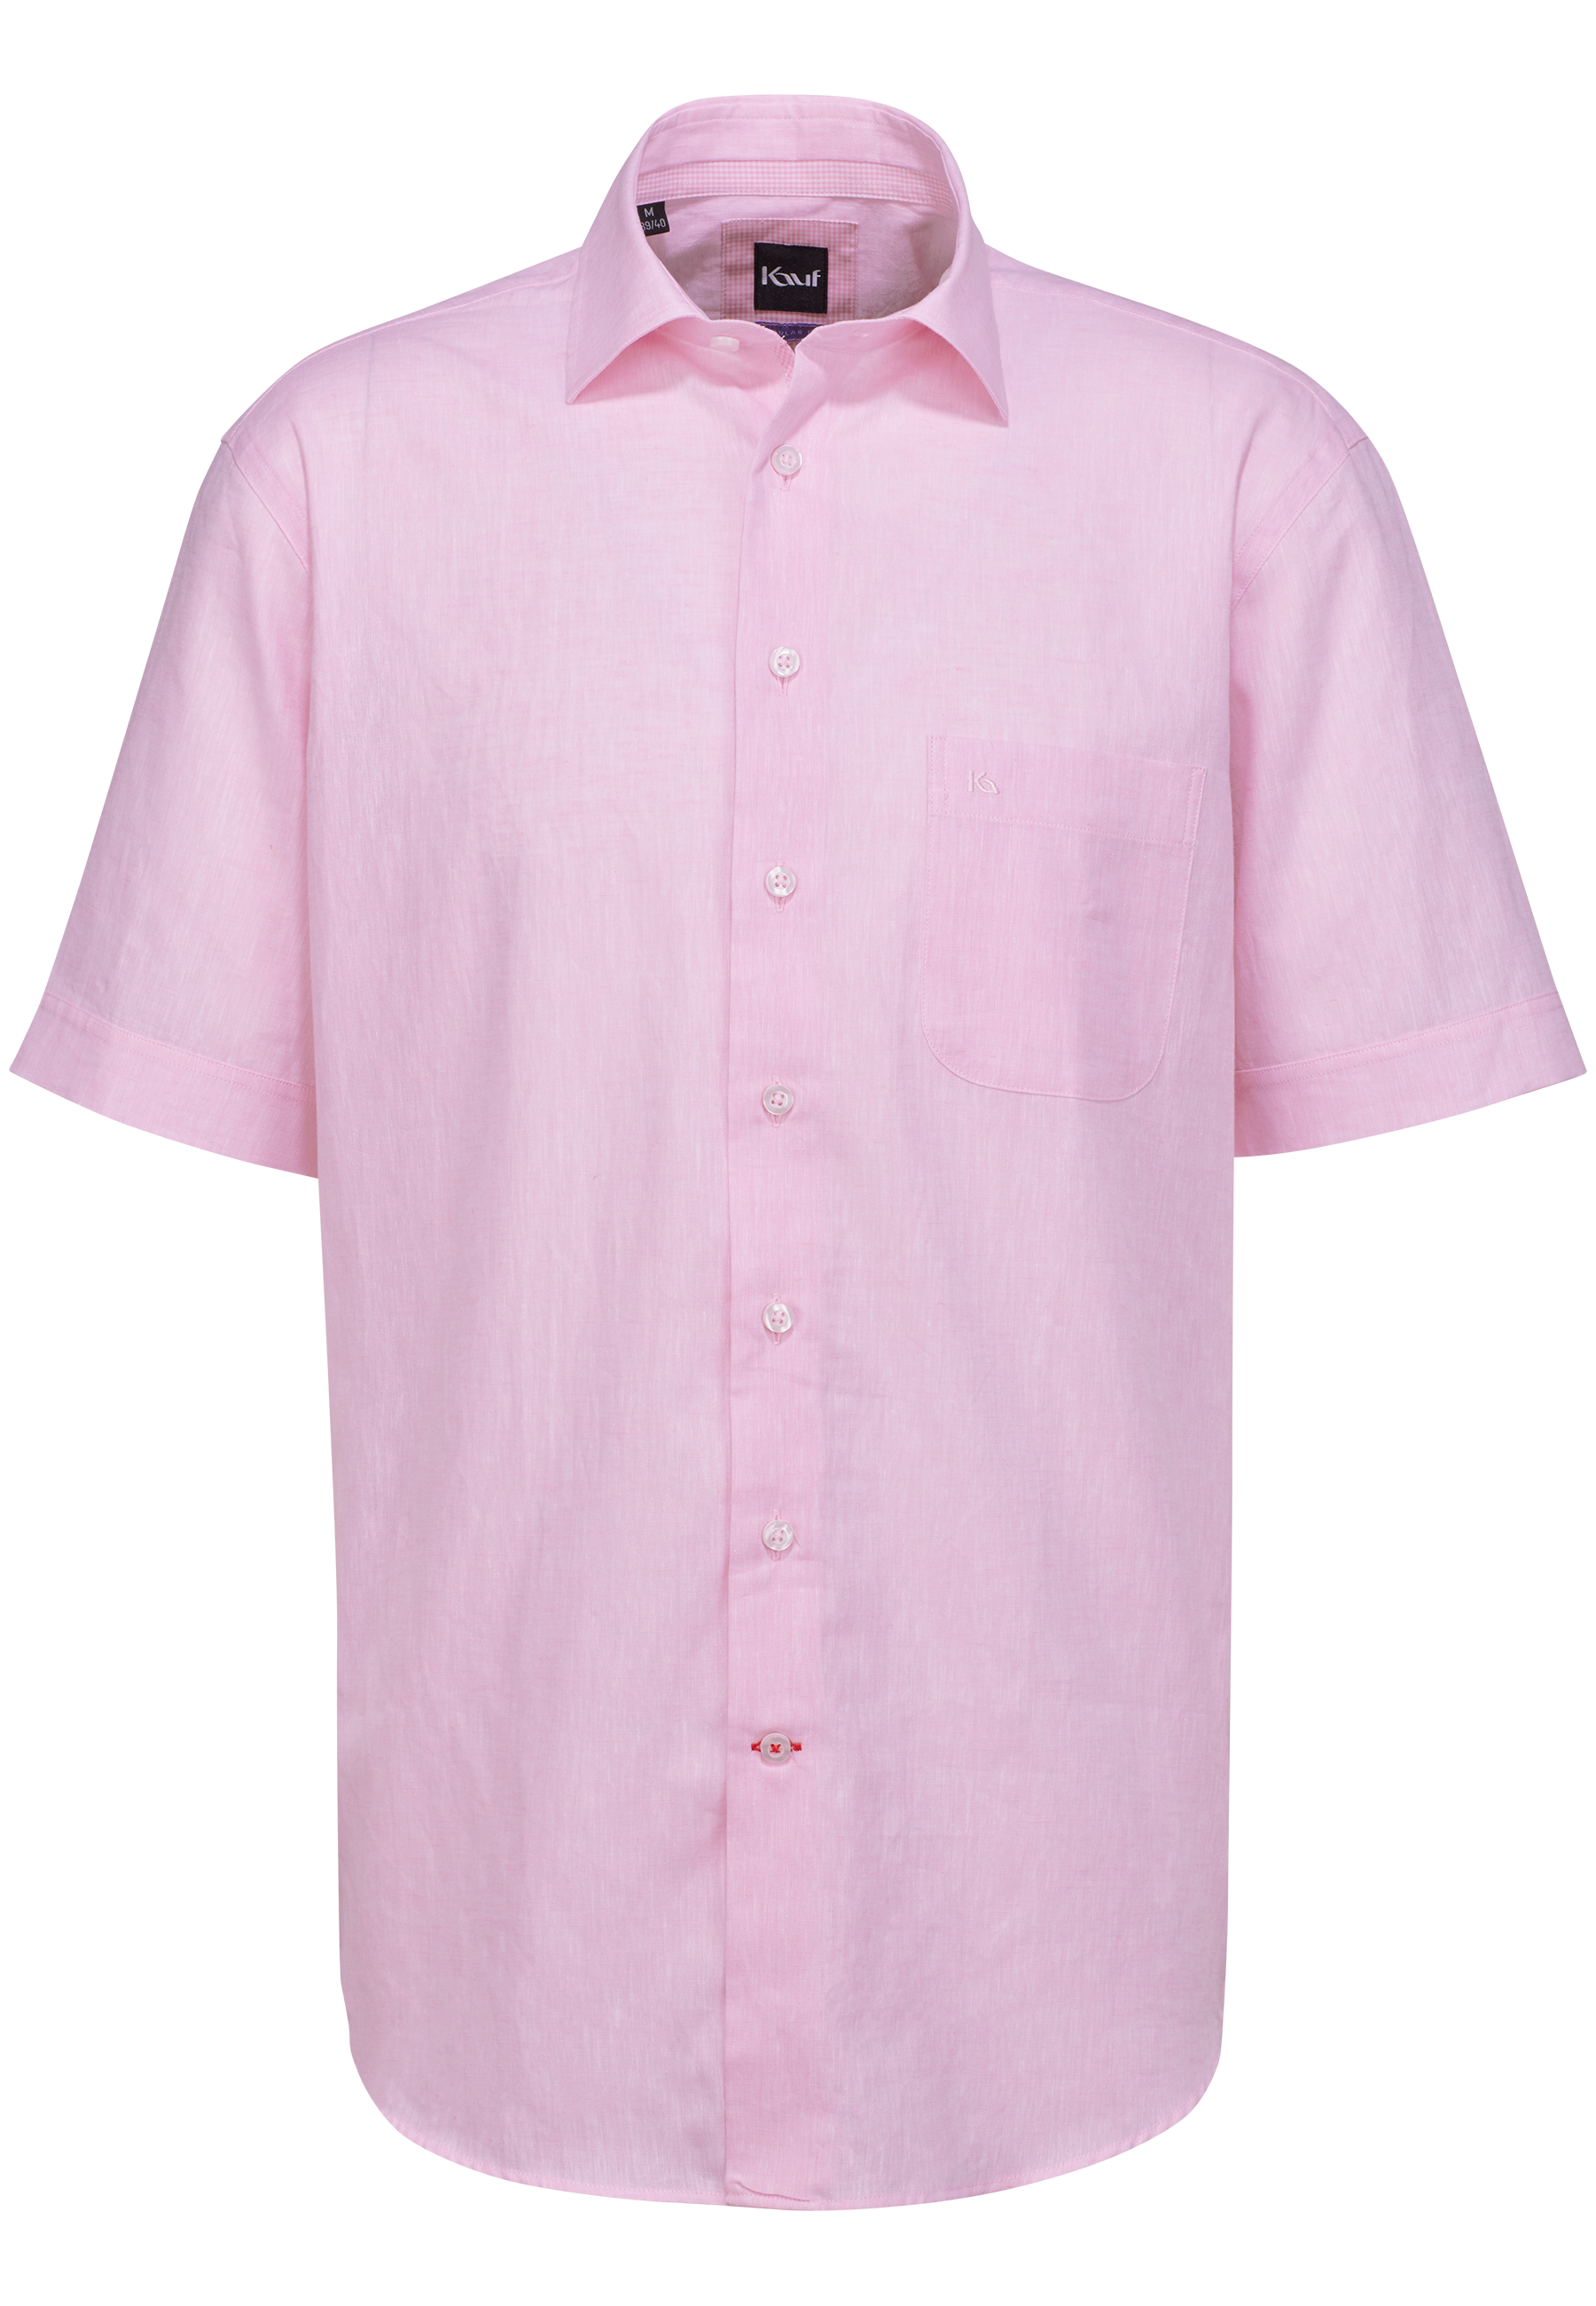 Hemd rosa